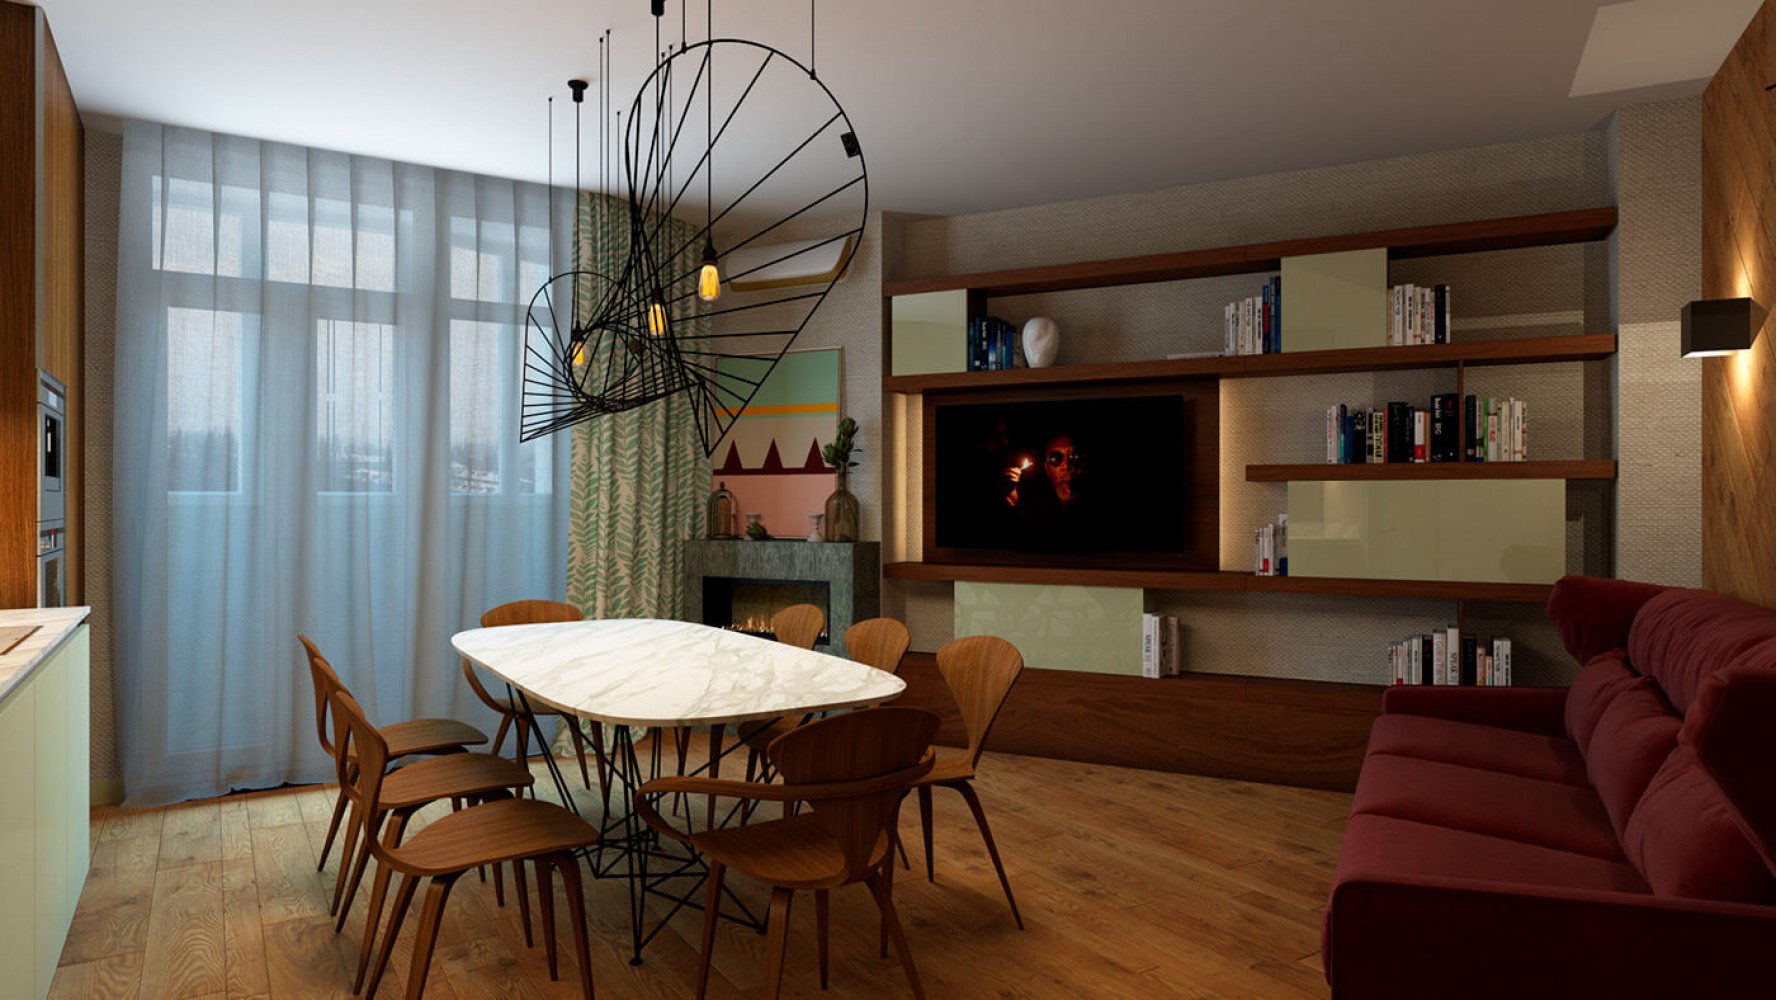 Кухня-гостиная — Дизайн-проект 3-комнатной квартиры, 68 м.кв —  Надежда Власенко